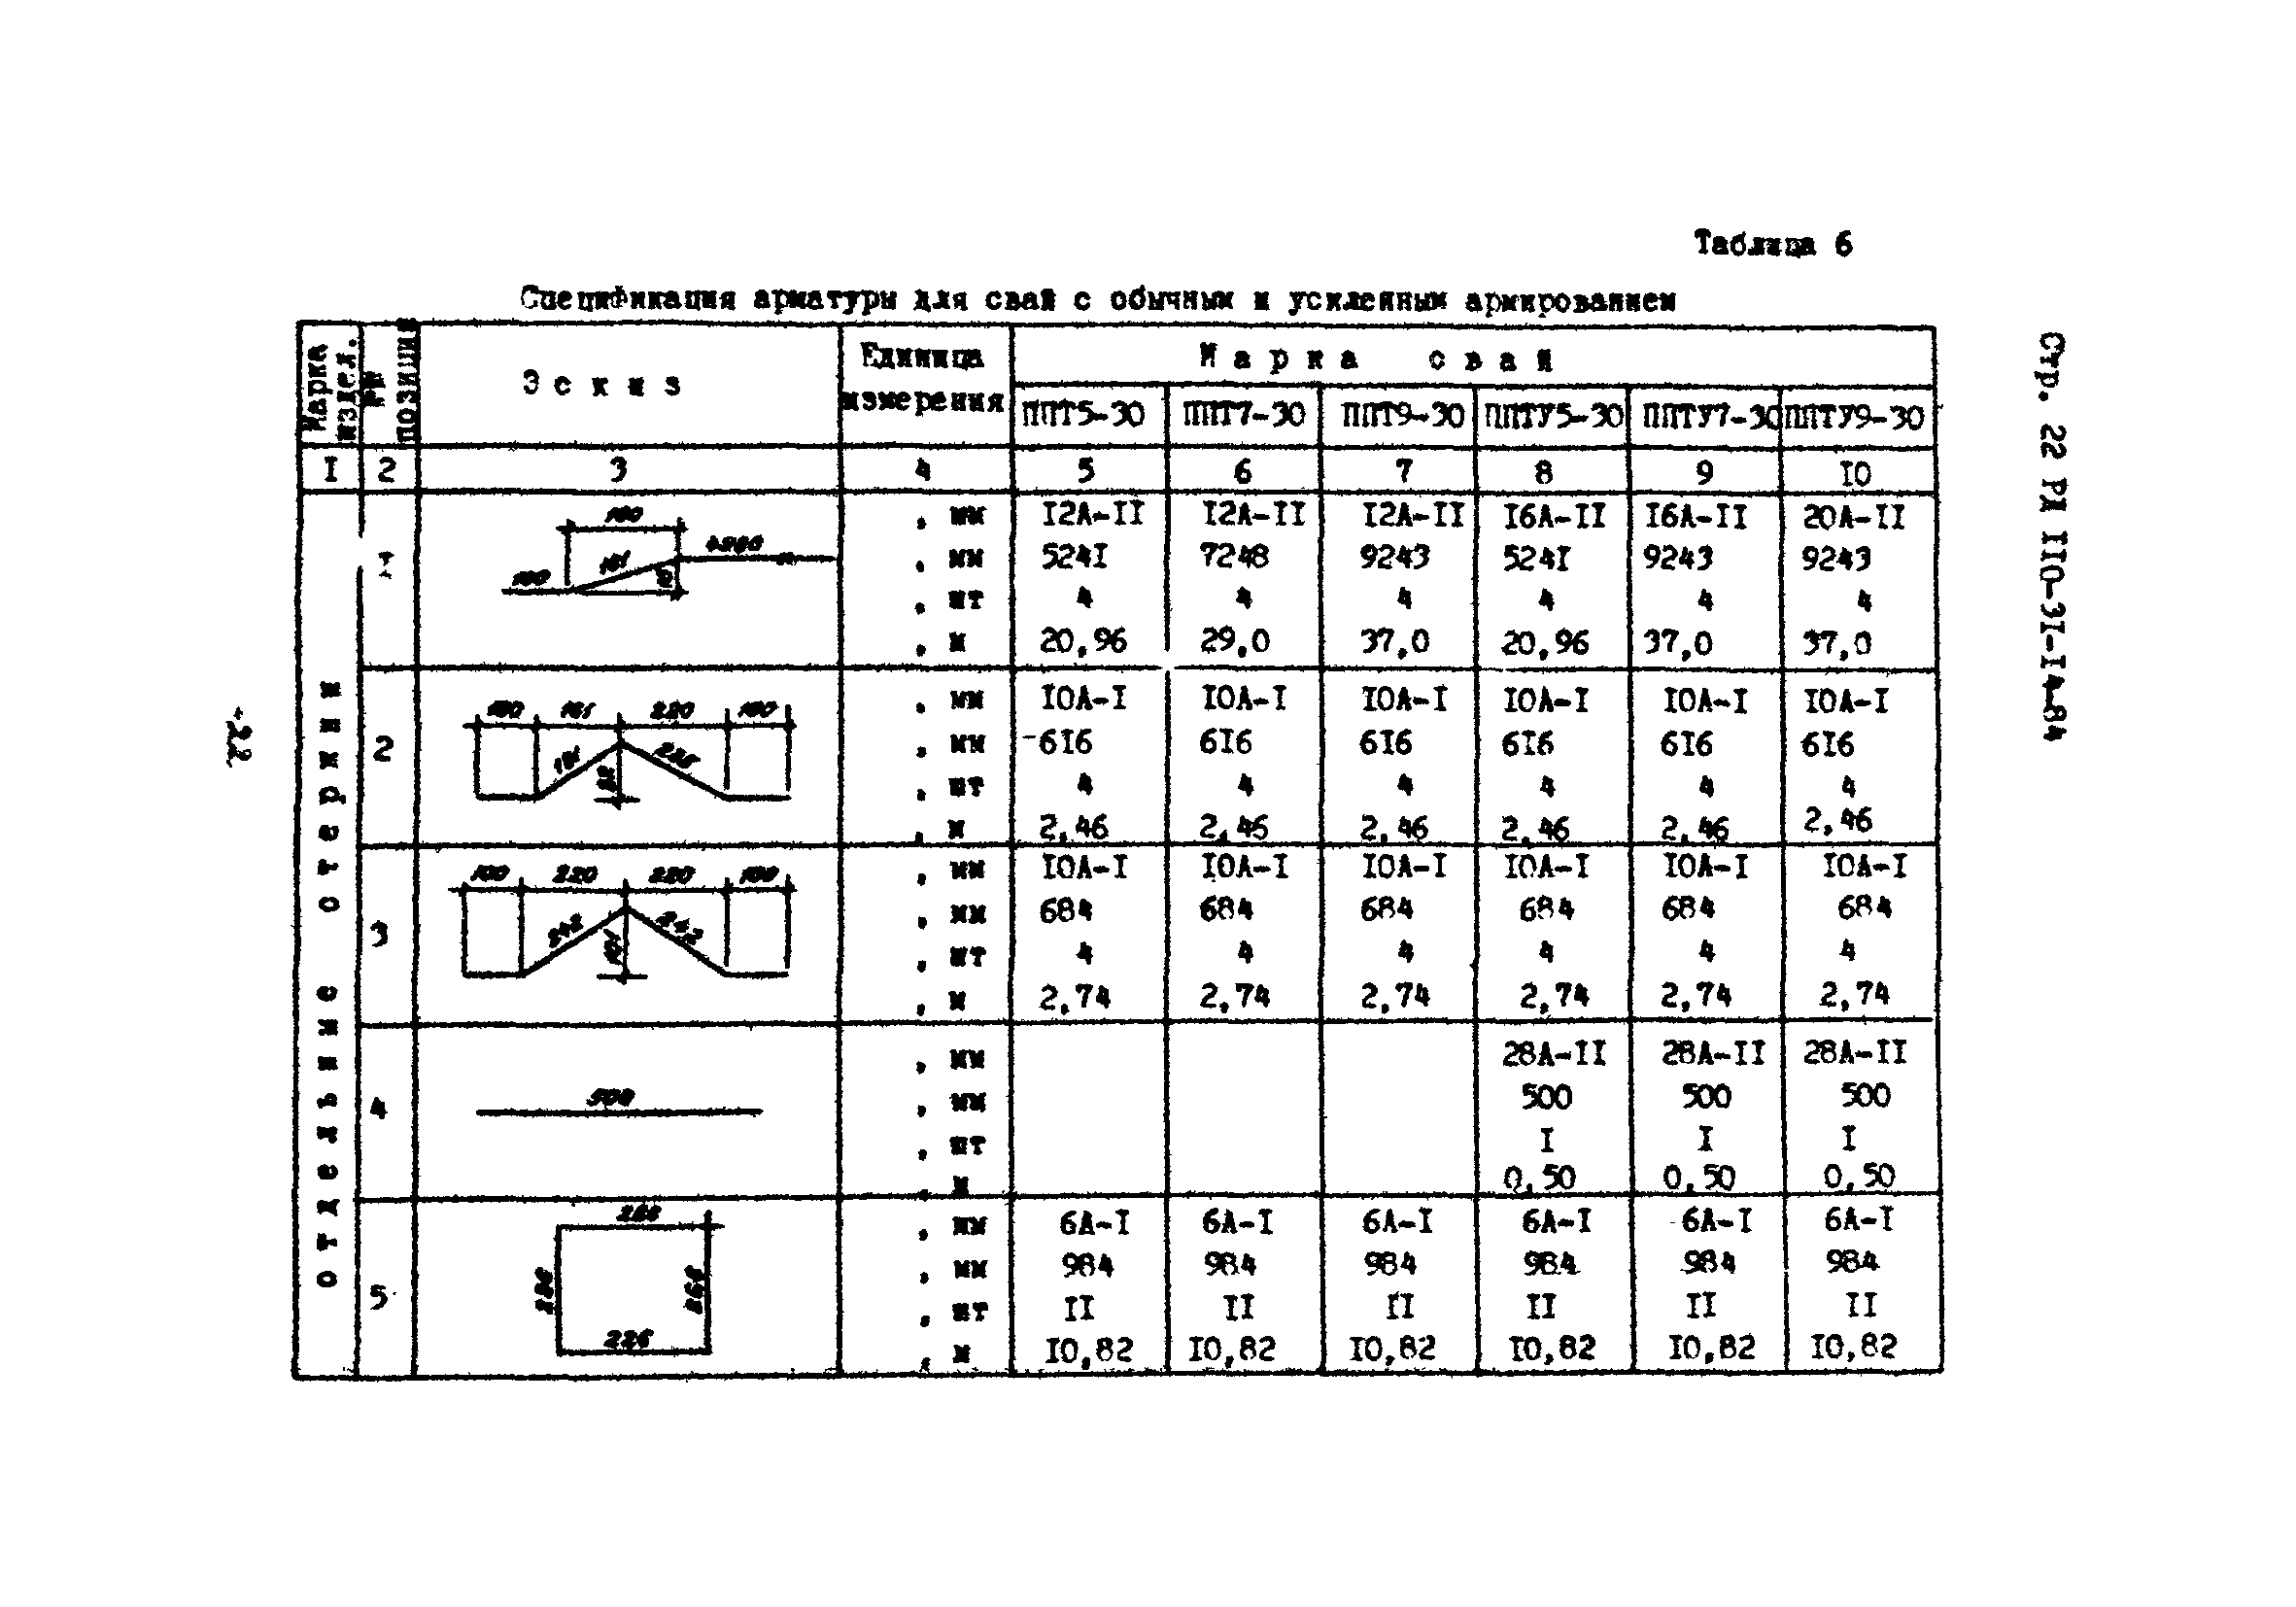 РД 110-31-14-84